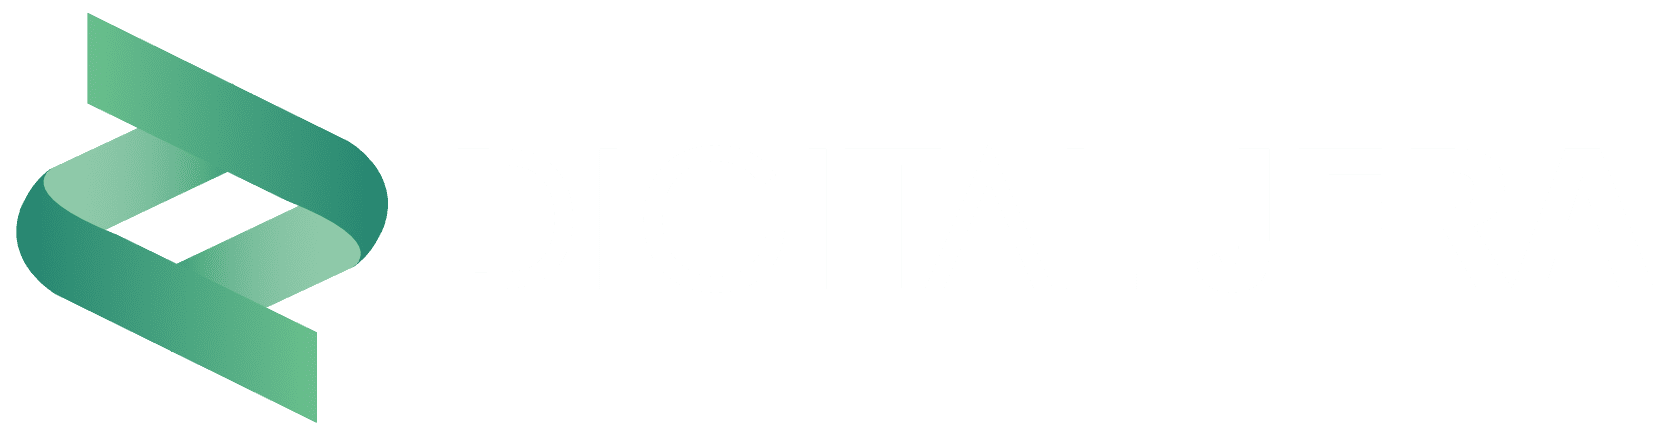 Digital Jera Logo